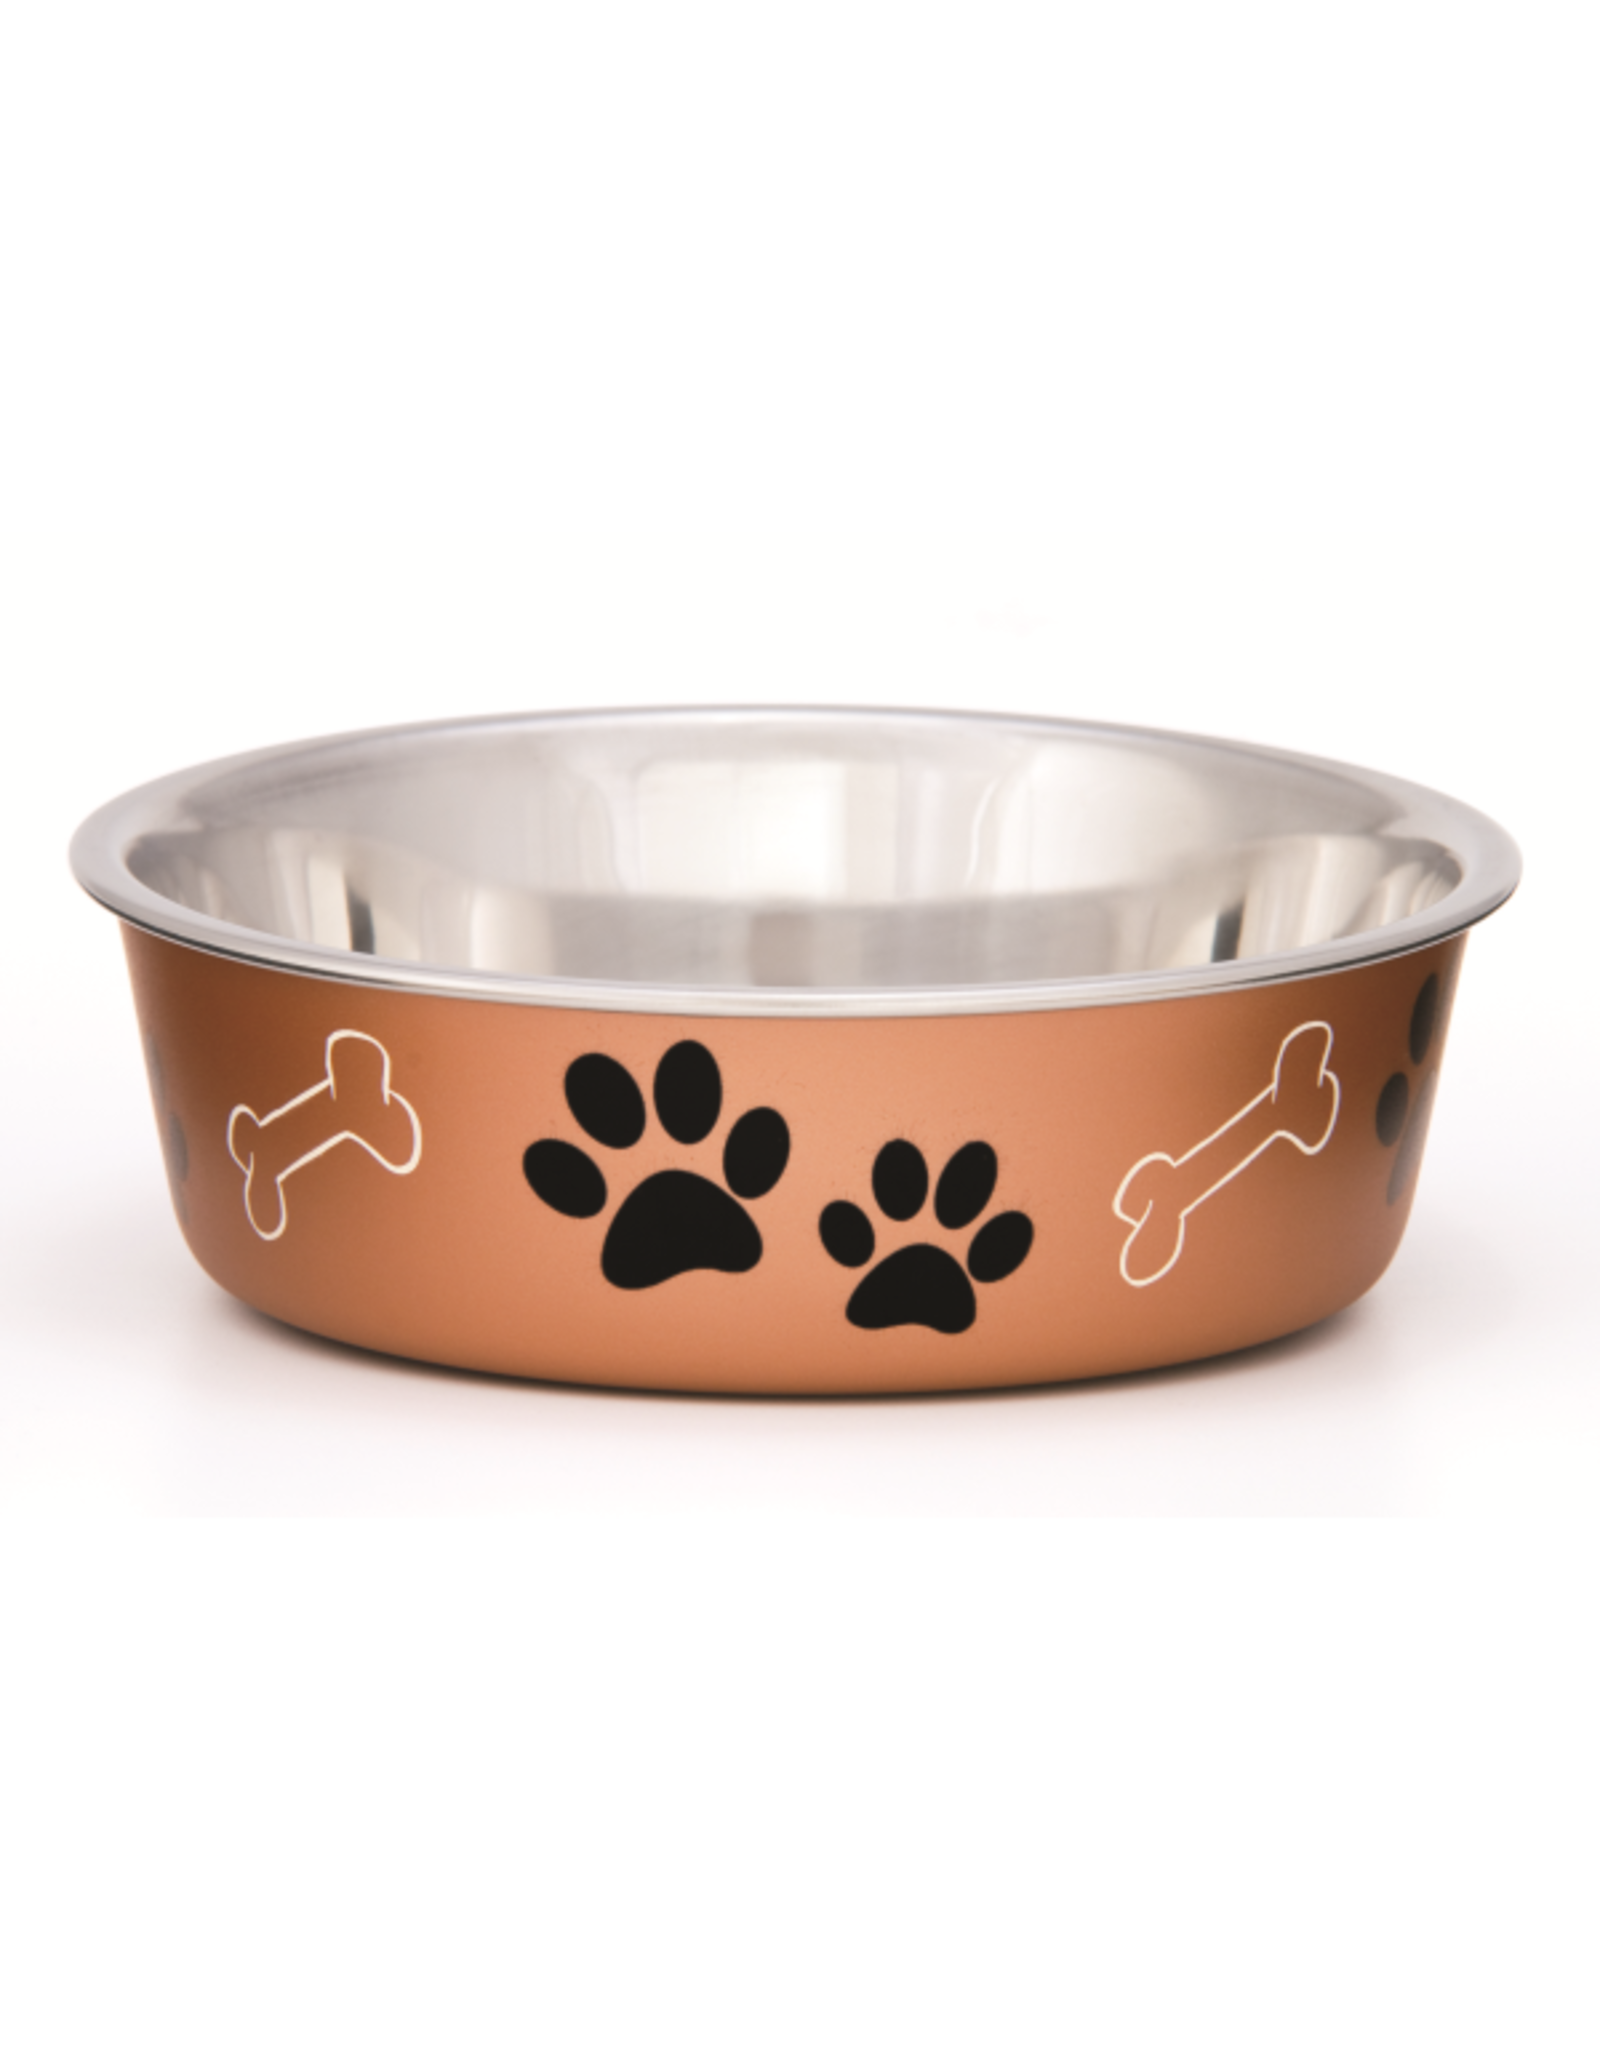 Loving Pets Bella Bowls Metallic Copper Medium